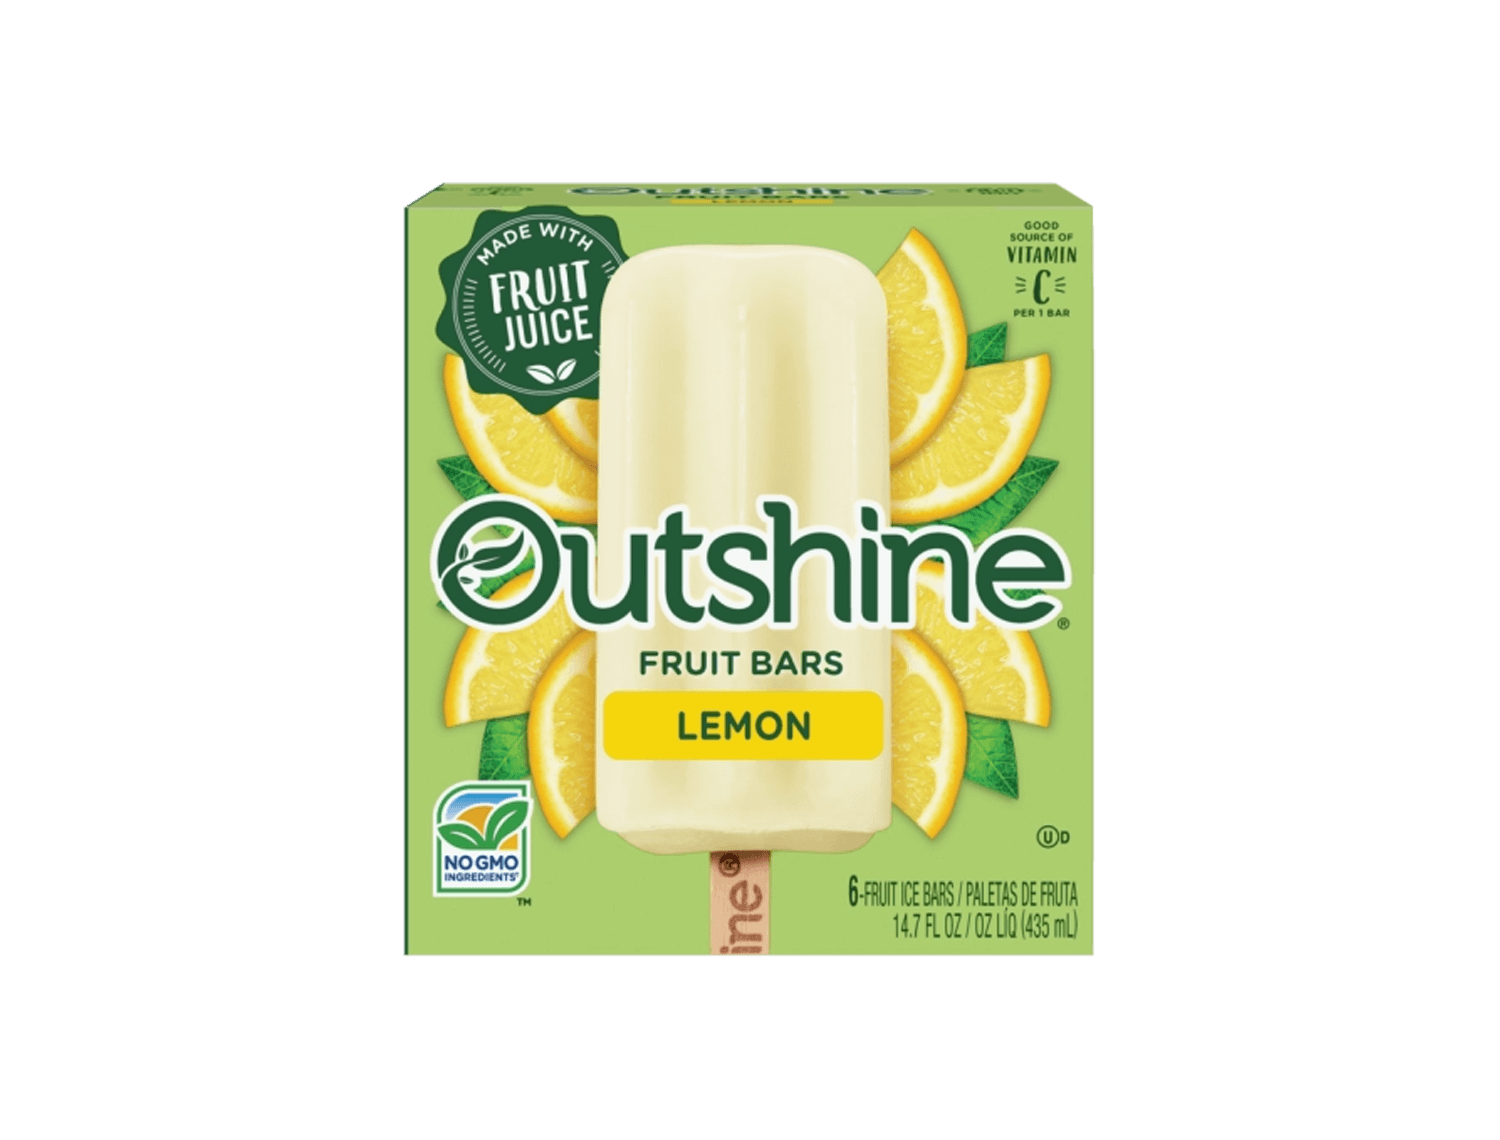 box of Outshine lemon fruit bars